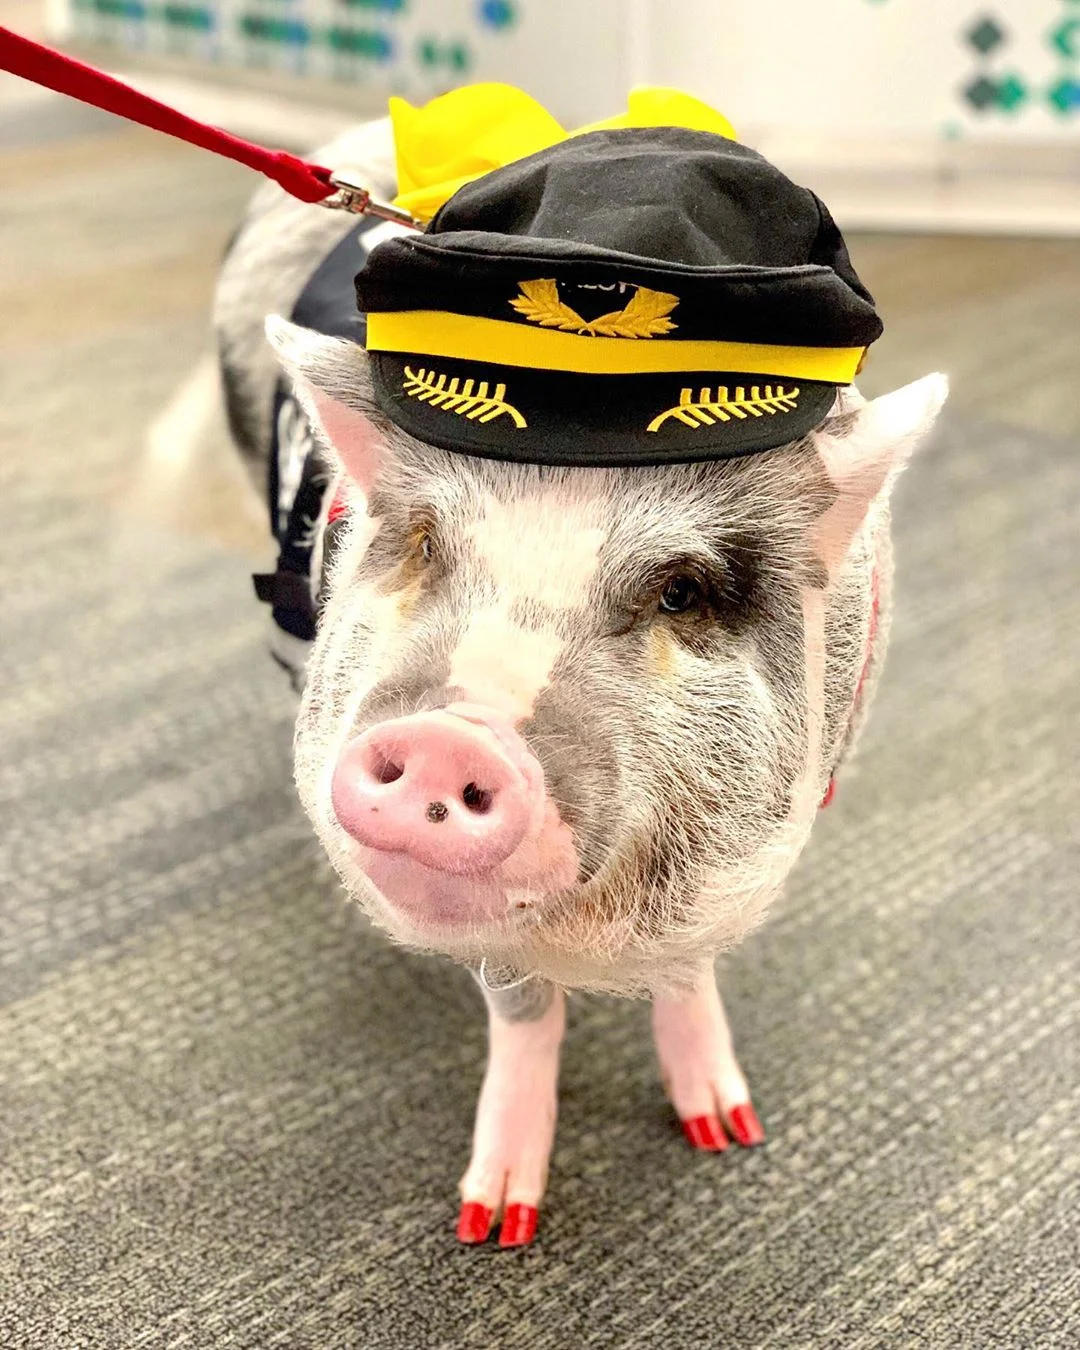 В аэропорту Сан-Франциско теперь работает свинья, которая мгновенно стала звездой - фото 458332